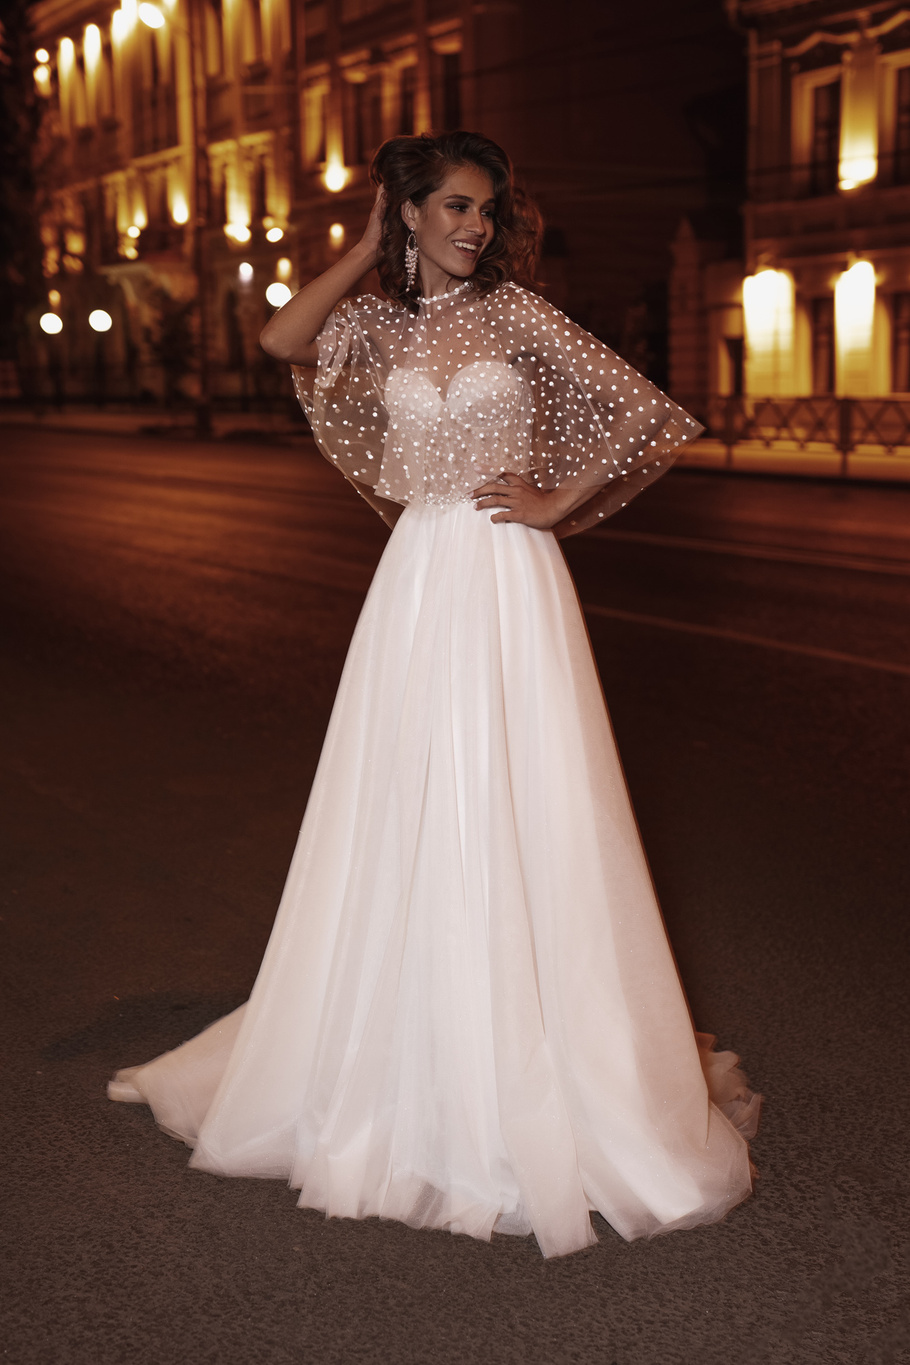 Купить свадебное платье «Берлин» Анна Кузнецова из коллекции Биг Сити Лав 2021 года в салоне «Мэри Трюфель»